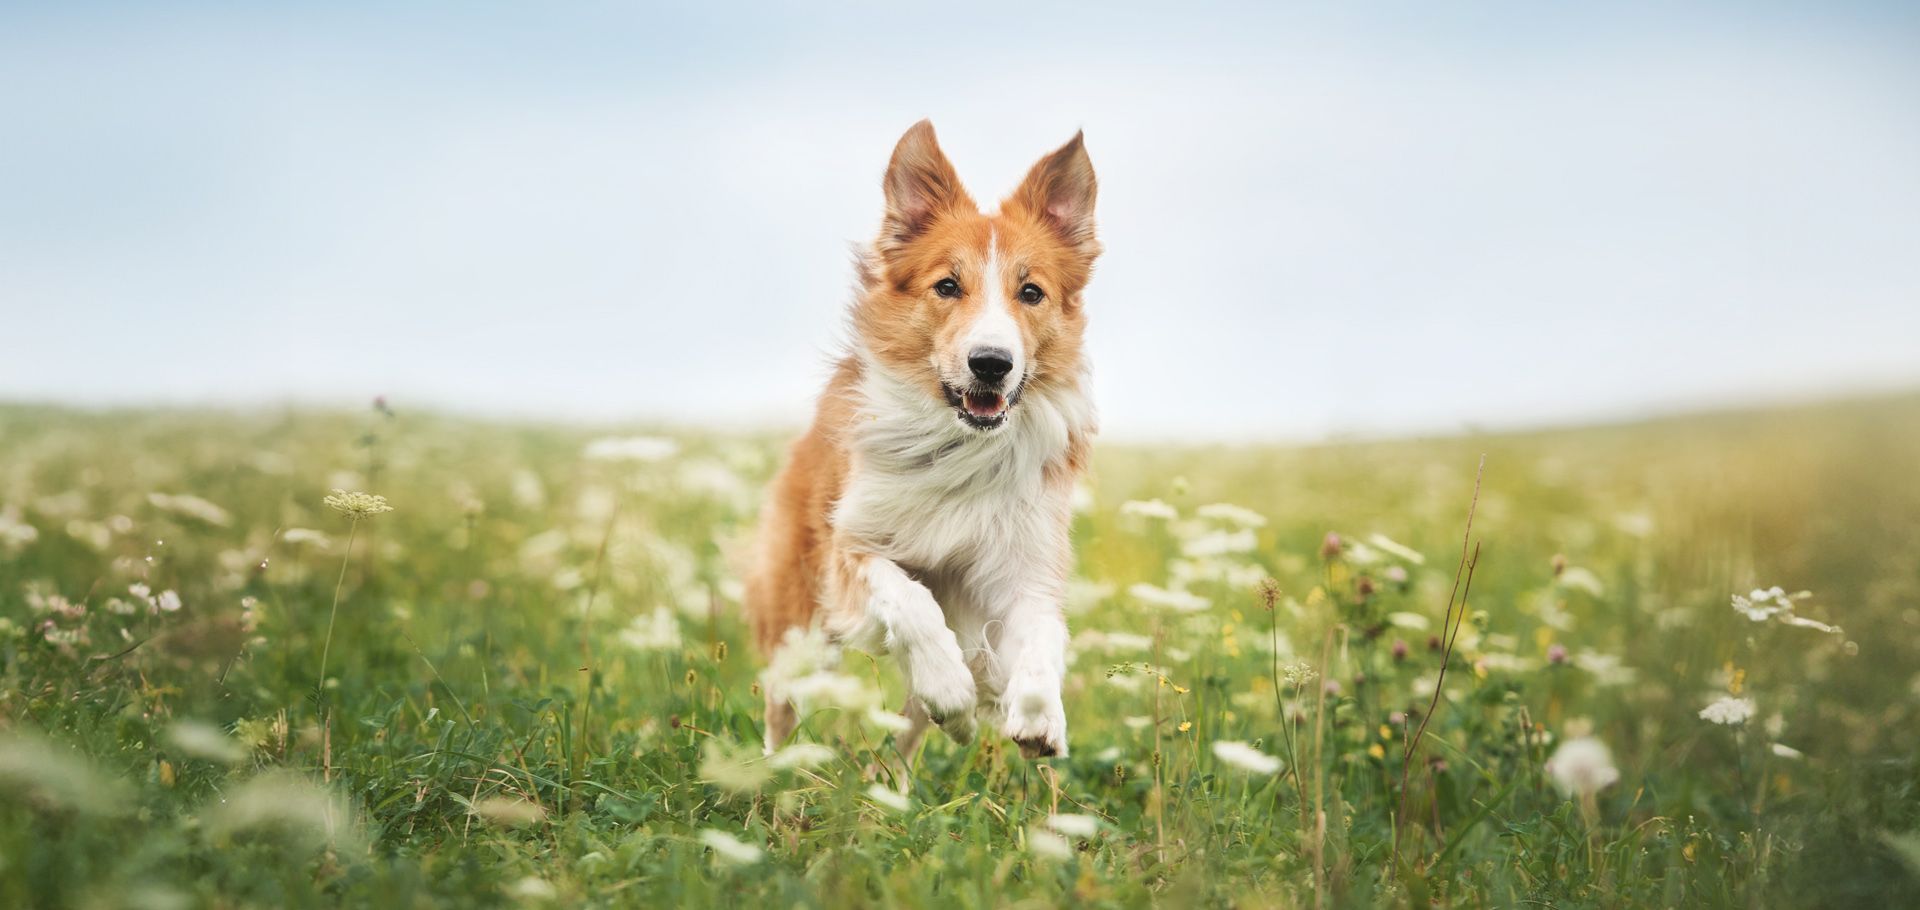 a dog runs through a field of flowers